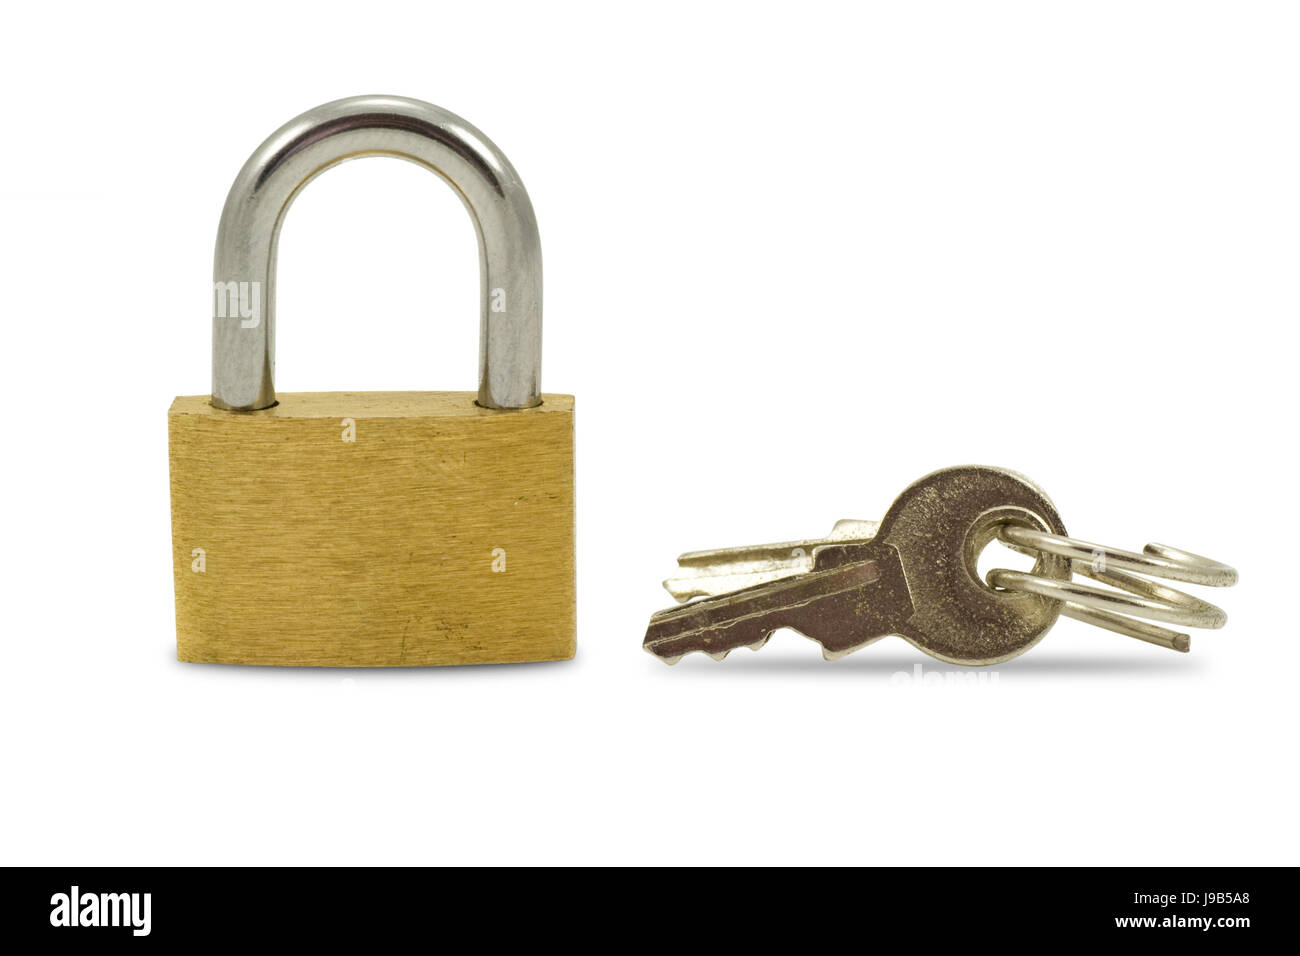 Lock, objet, strong, protéger, protection, sécurité, sécurité, clés, serrure, fermer, Banque D'Images